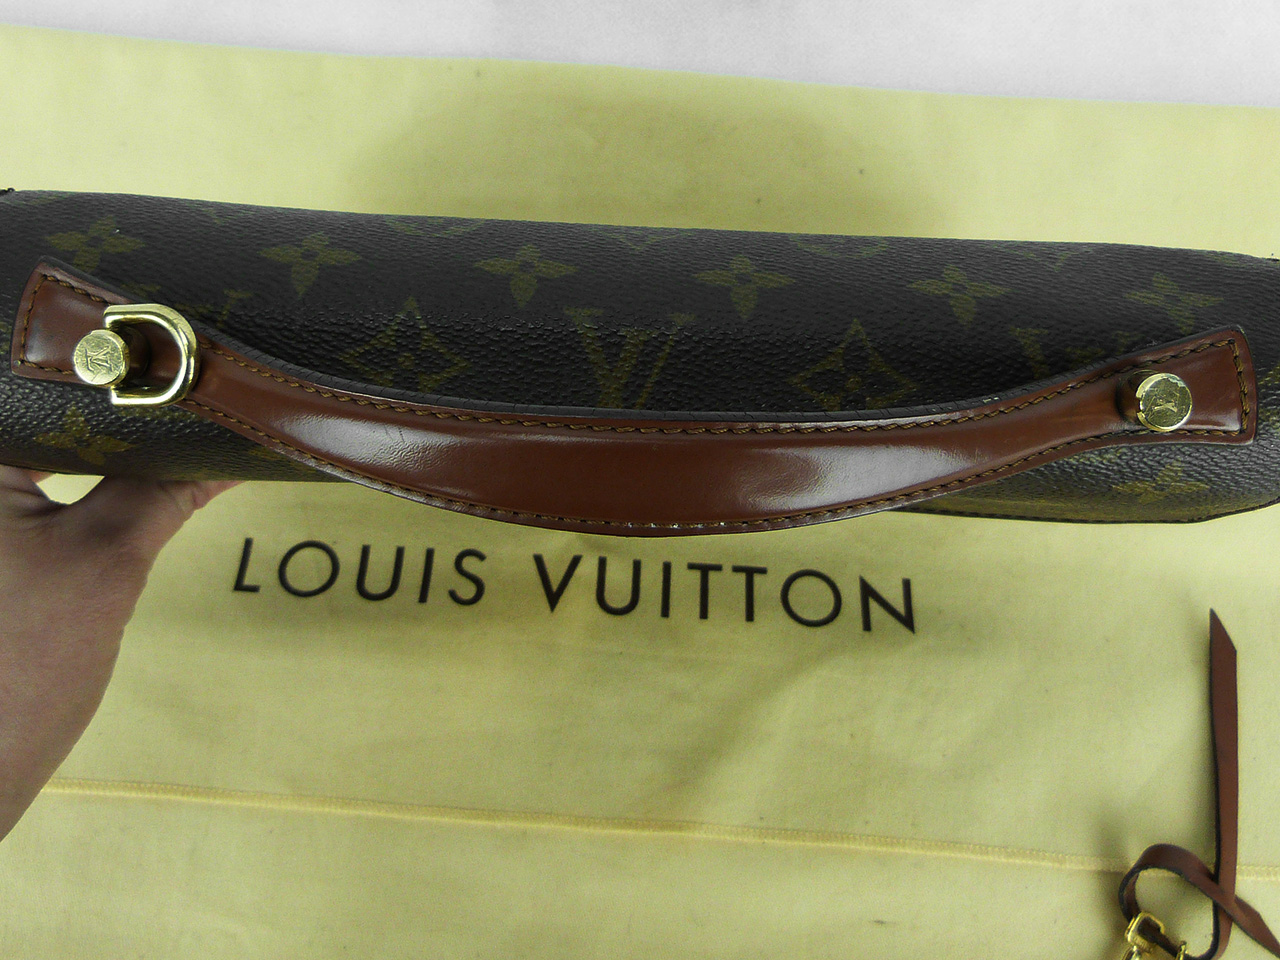 Sac Louis Vuitton Concorde Authentique d'occasion Monogram Vintage